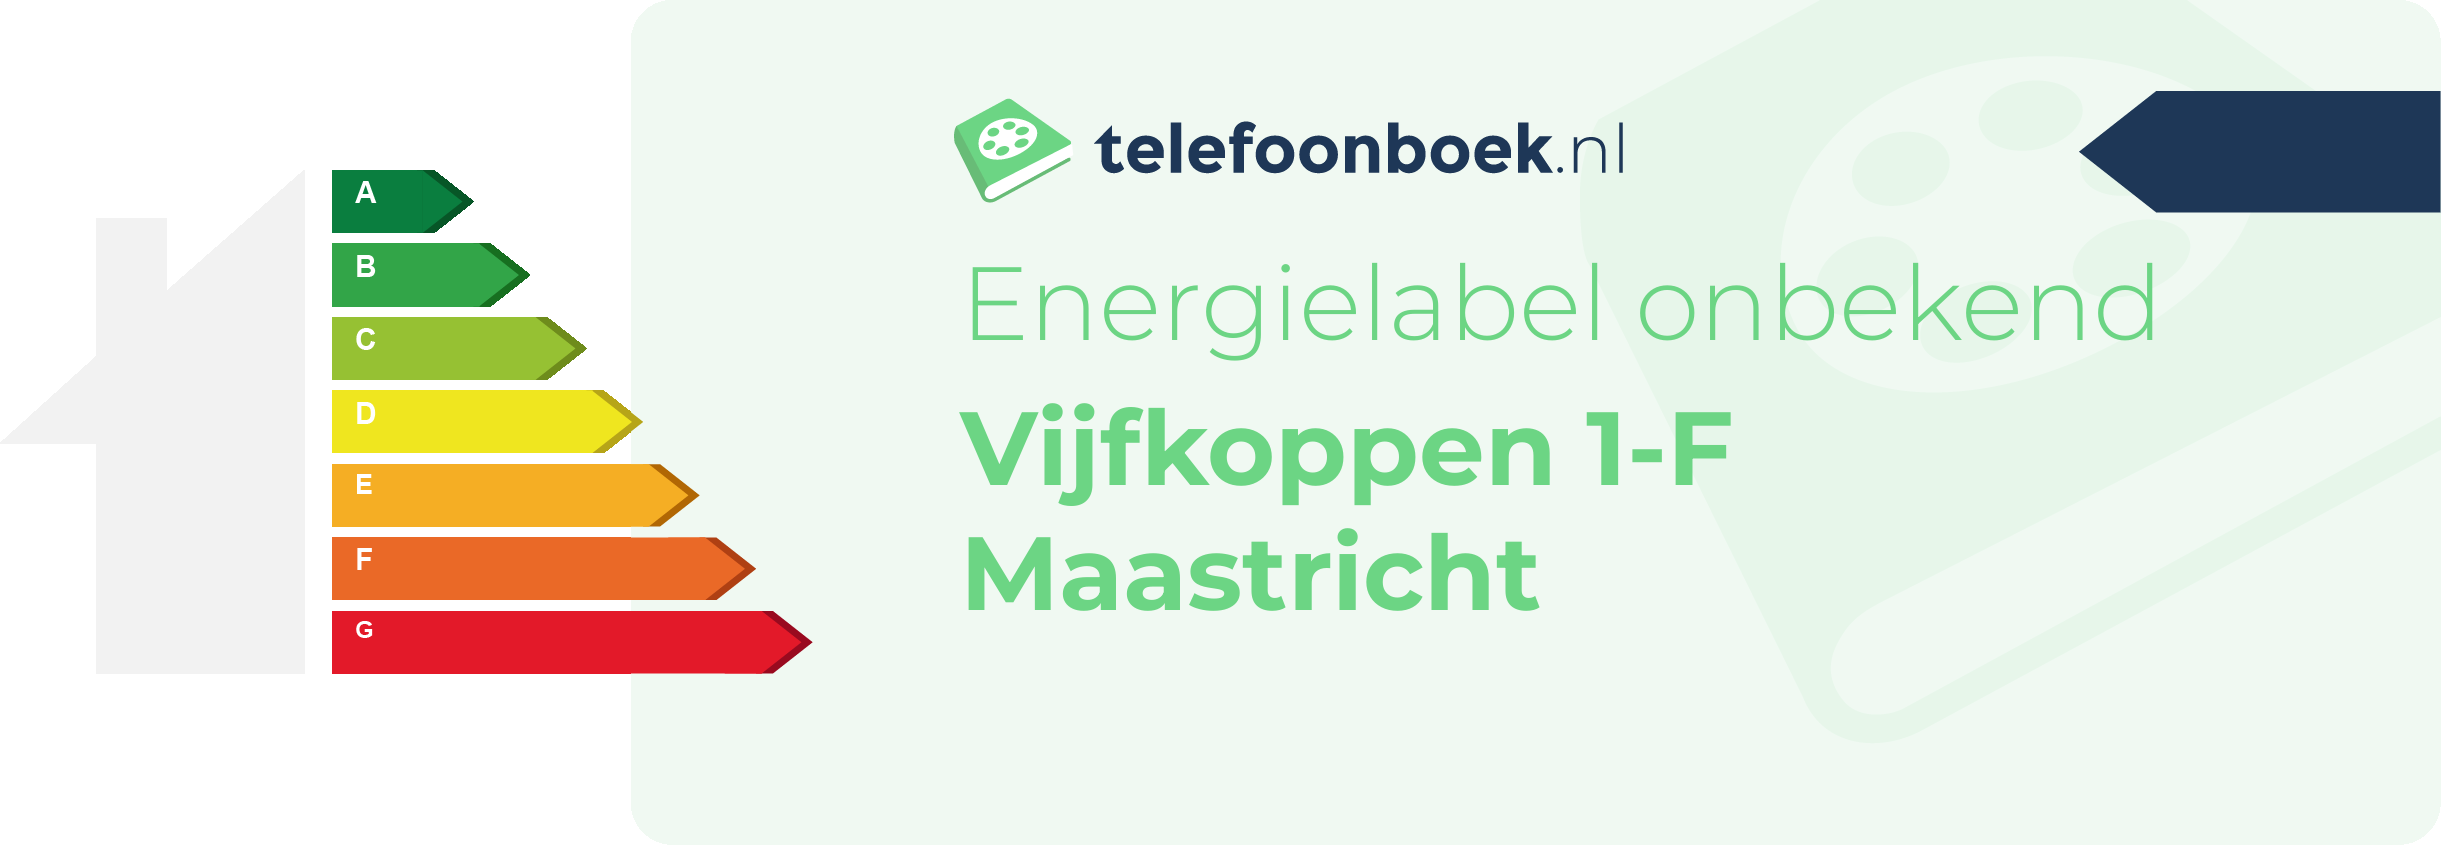 Energielabel Vijfkoppen 1-F Maastricht